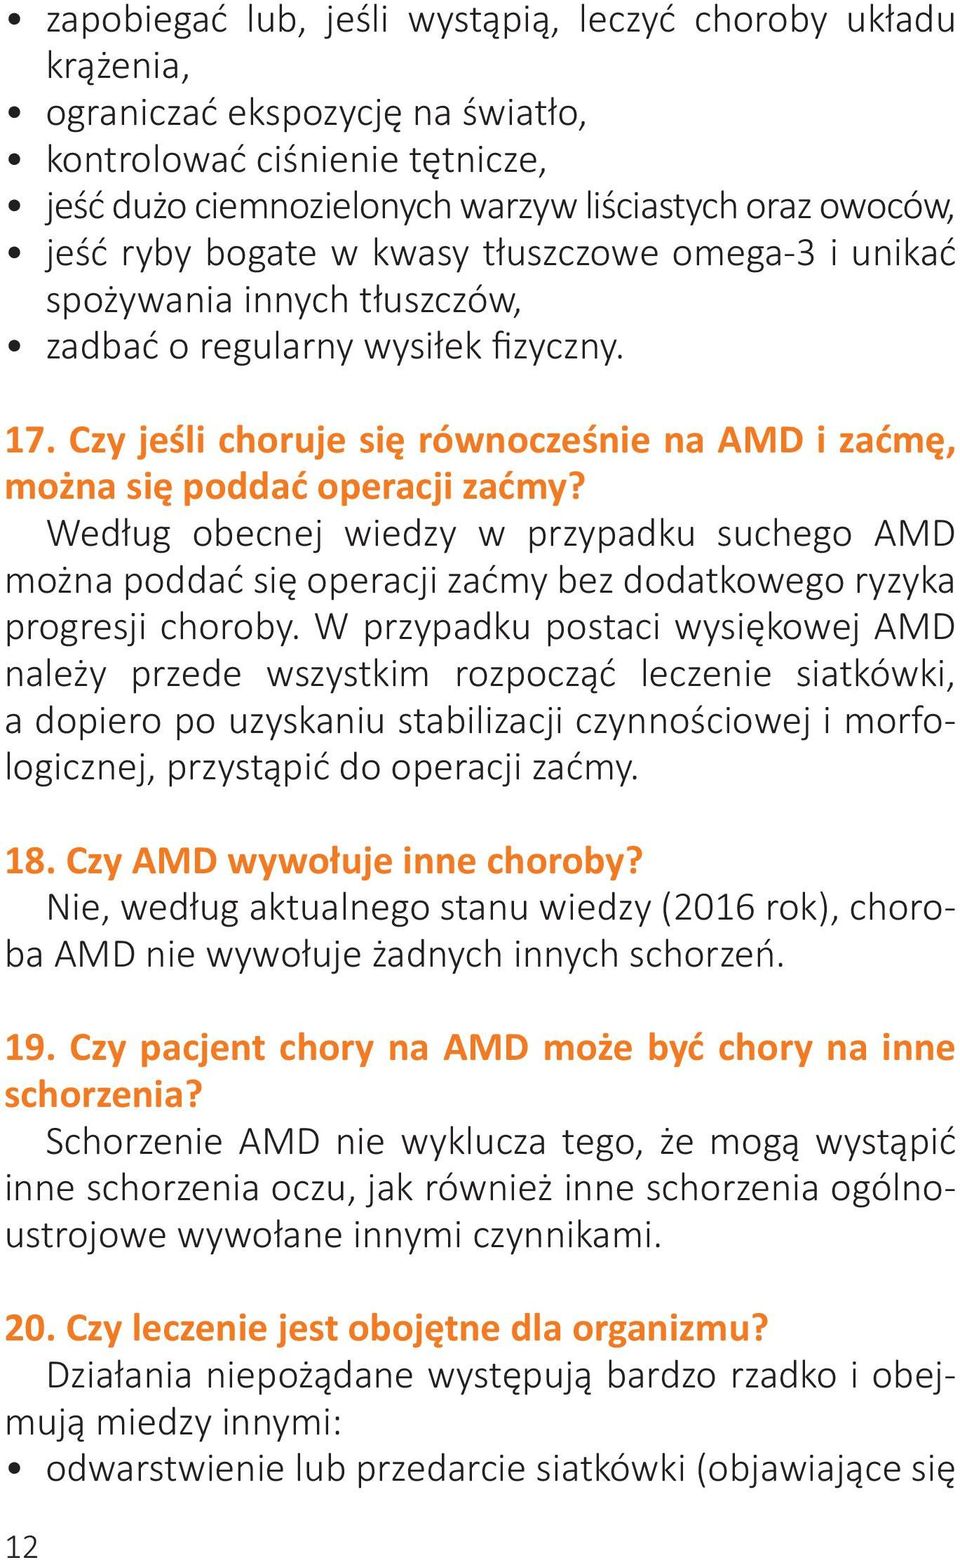 Według obecnej wiedzy w przypadku suchego AMD można poddać się operacji zaćmy bez dodatkowego ryzyka progresji choroby.